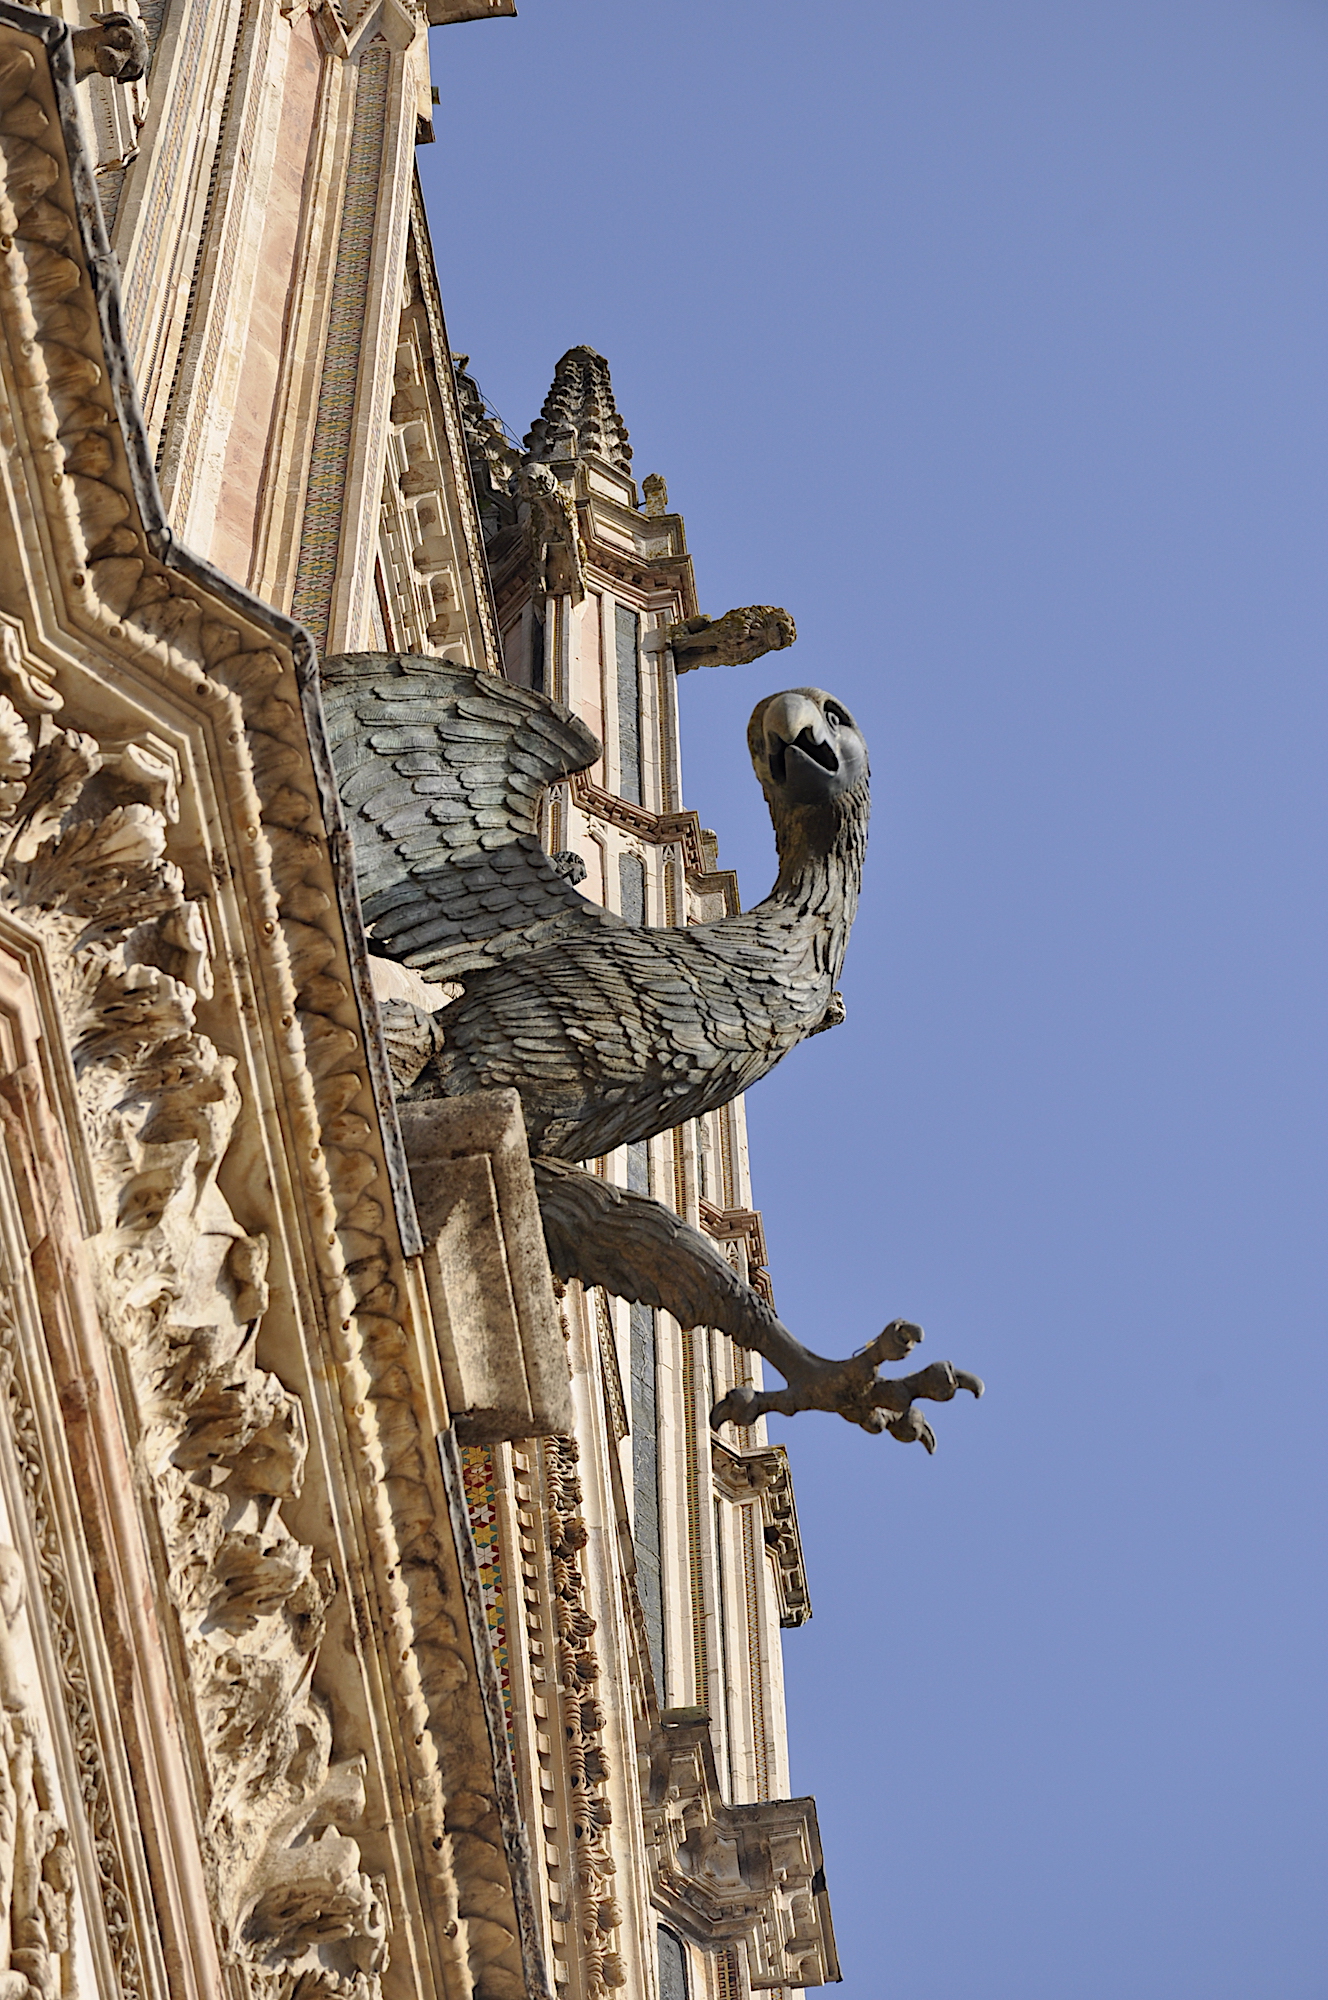 Bronze eagle mounted on the facade of the Orvieto Duomo